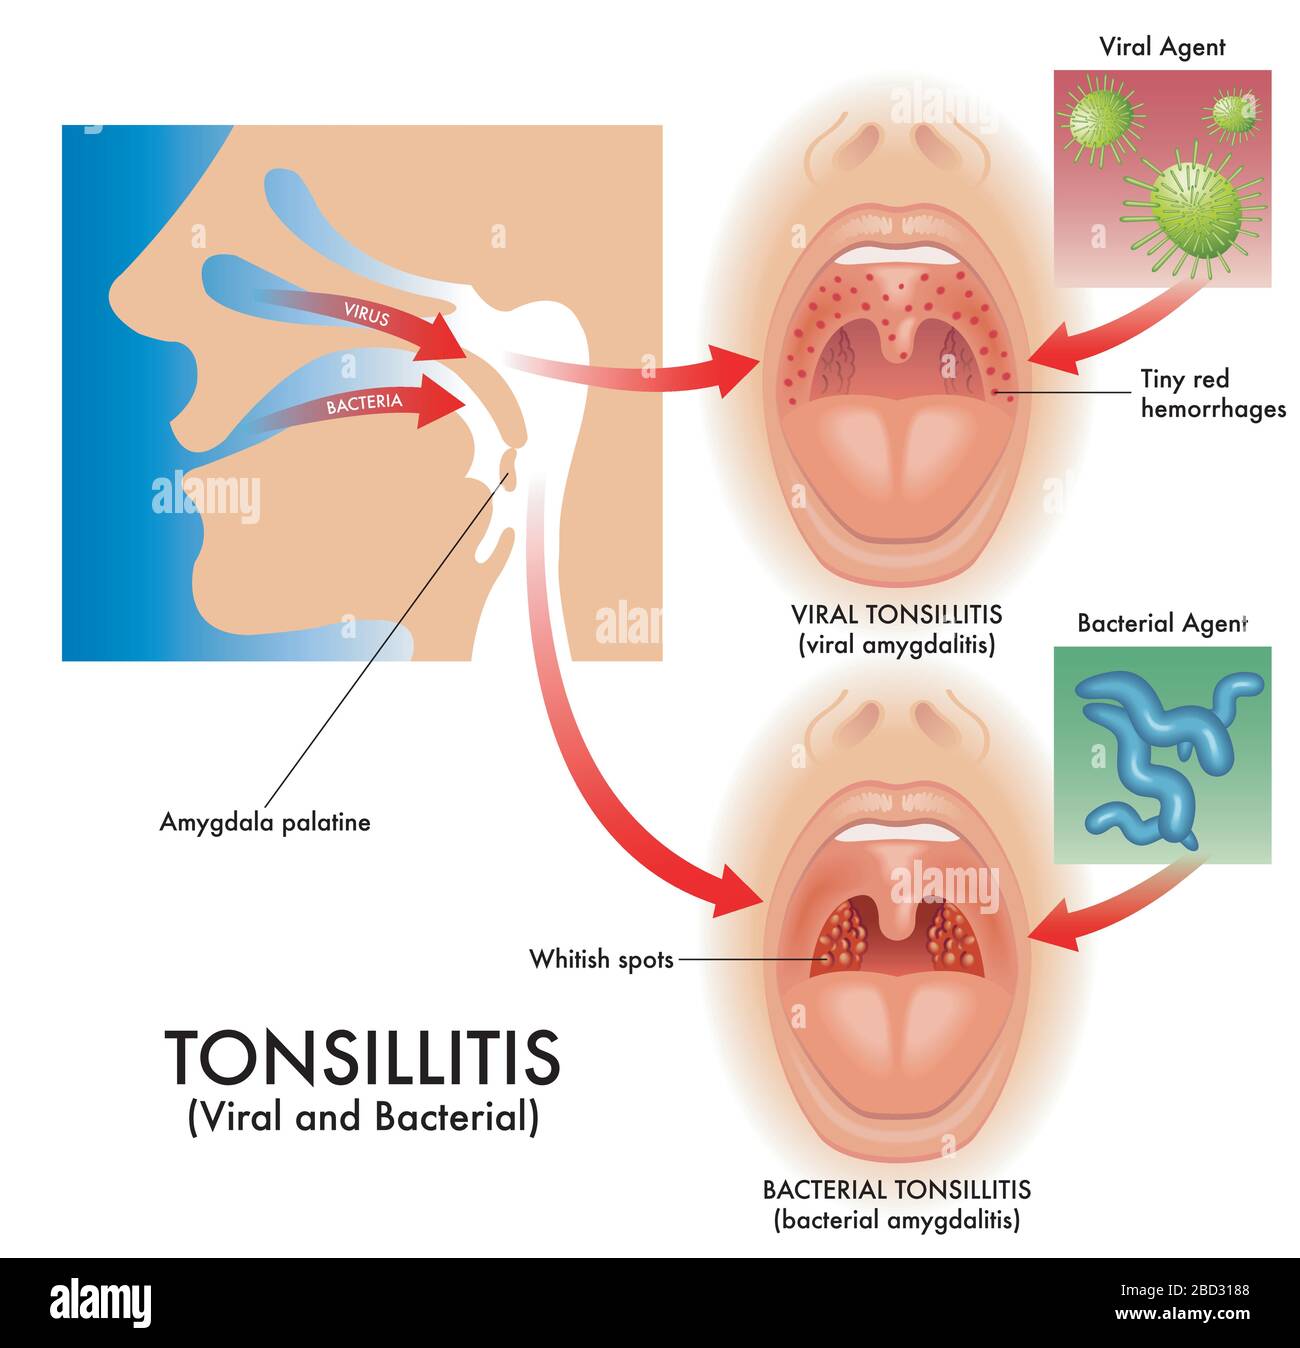 Illustrazione medica dei sintomi della tonsillite virale e batterica, detta anche amigdalite virale e amigdalite batterica, con i patogeni t Illustrazione Vettoriale